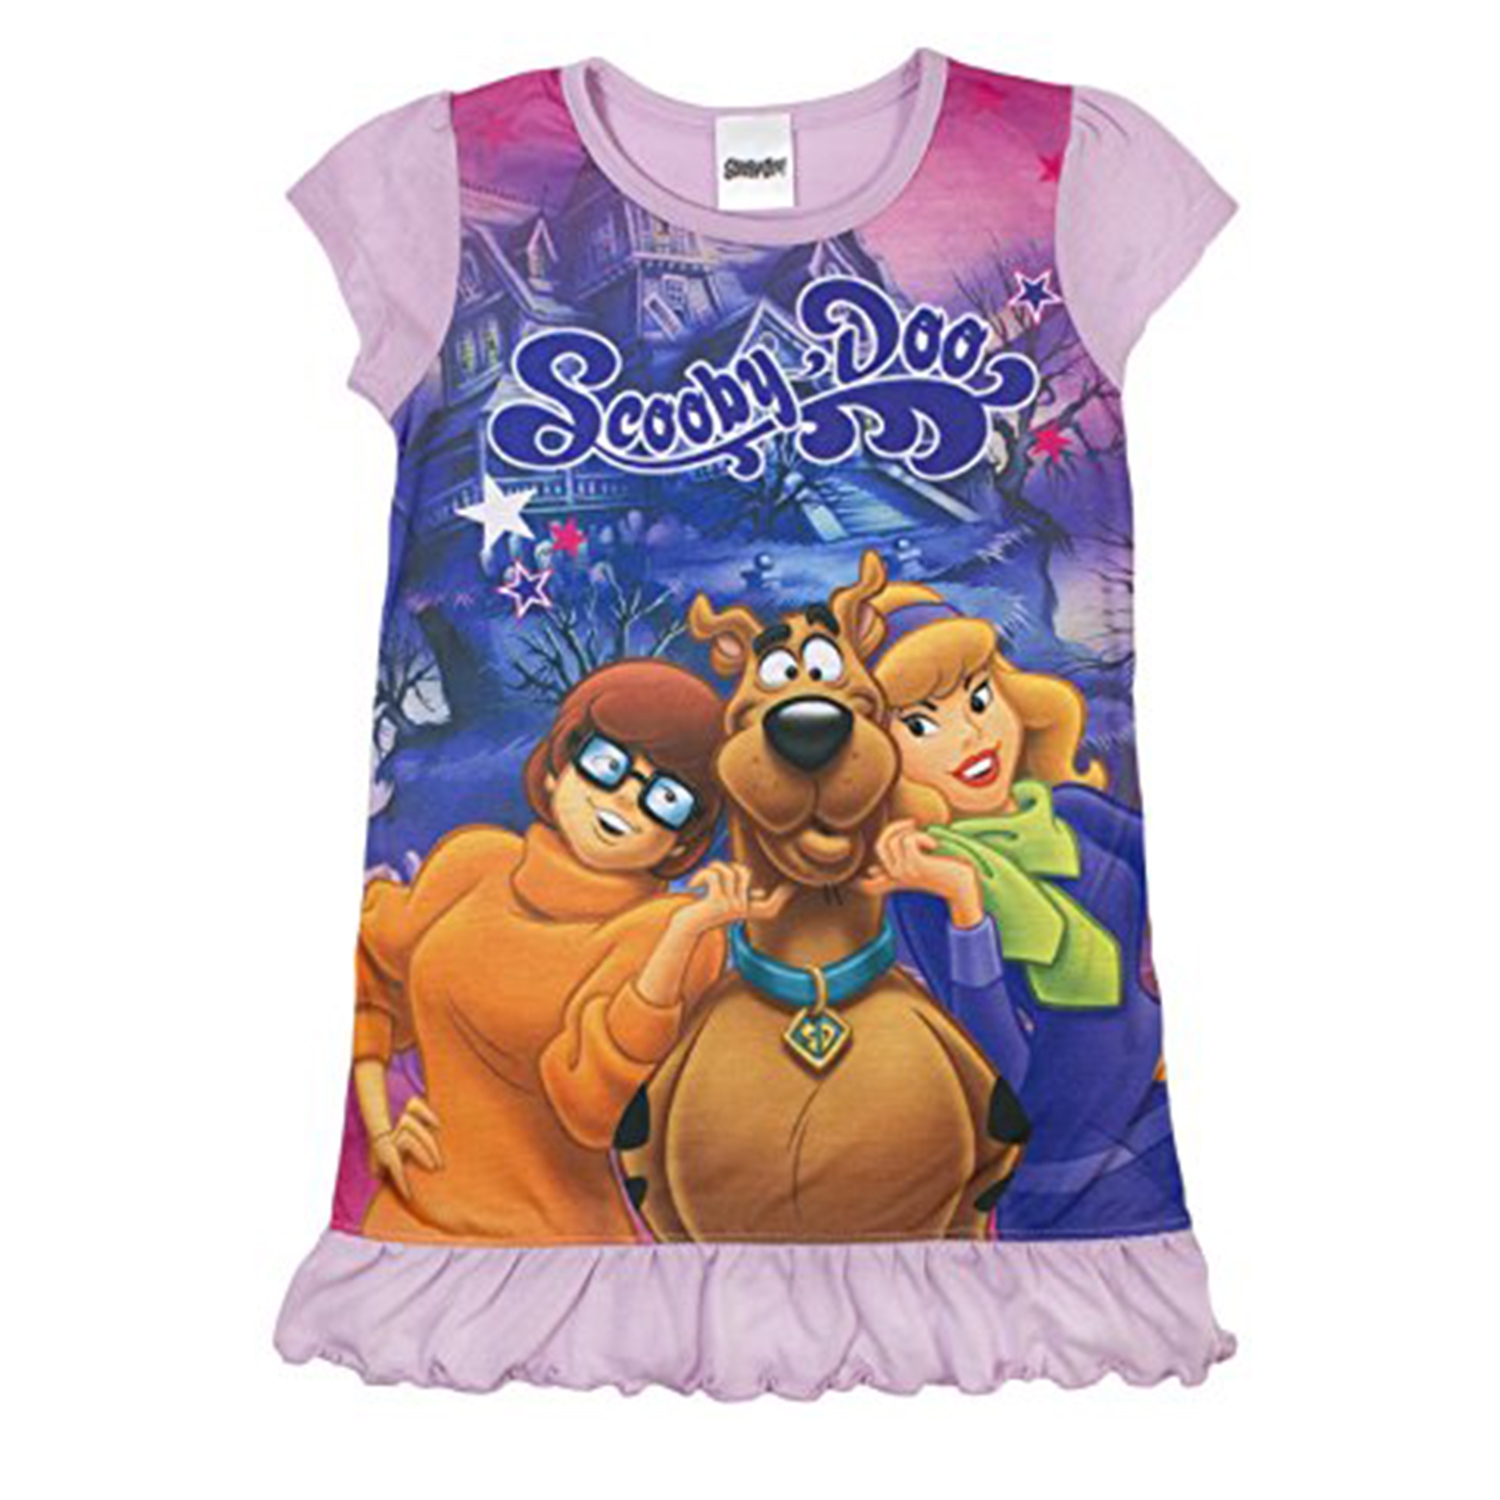 Scooby Doo 'Girls' Nightie 3 4 Years